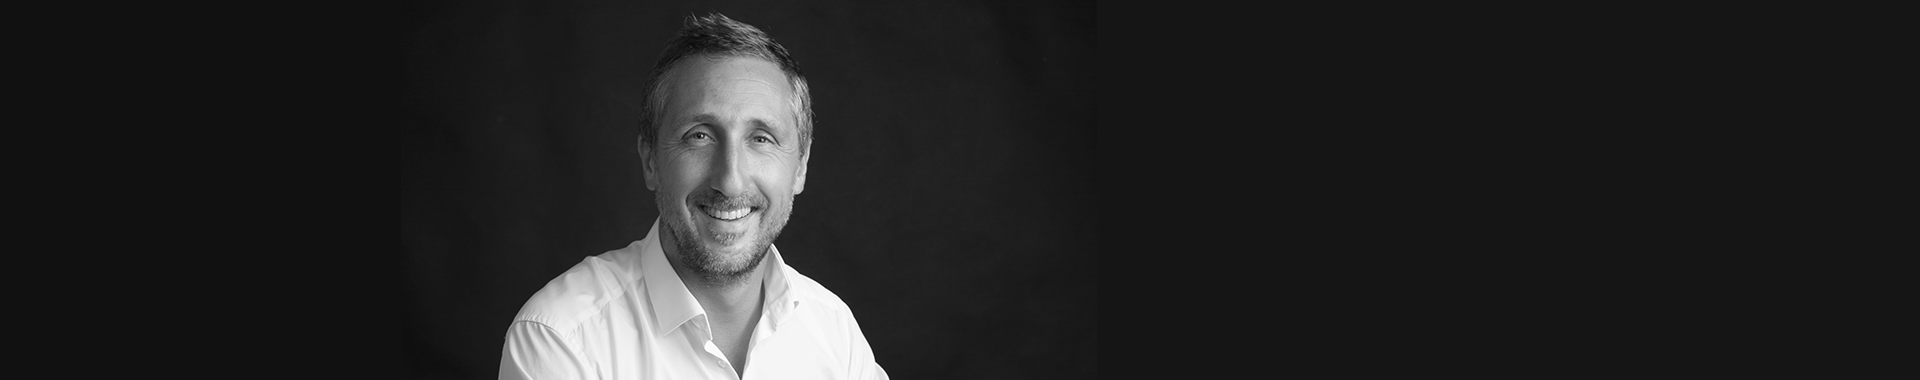 Sylvain Rigouleau nommé au poste de Directeur de la marque Signia